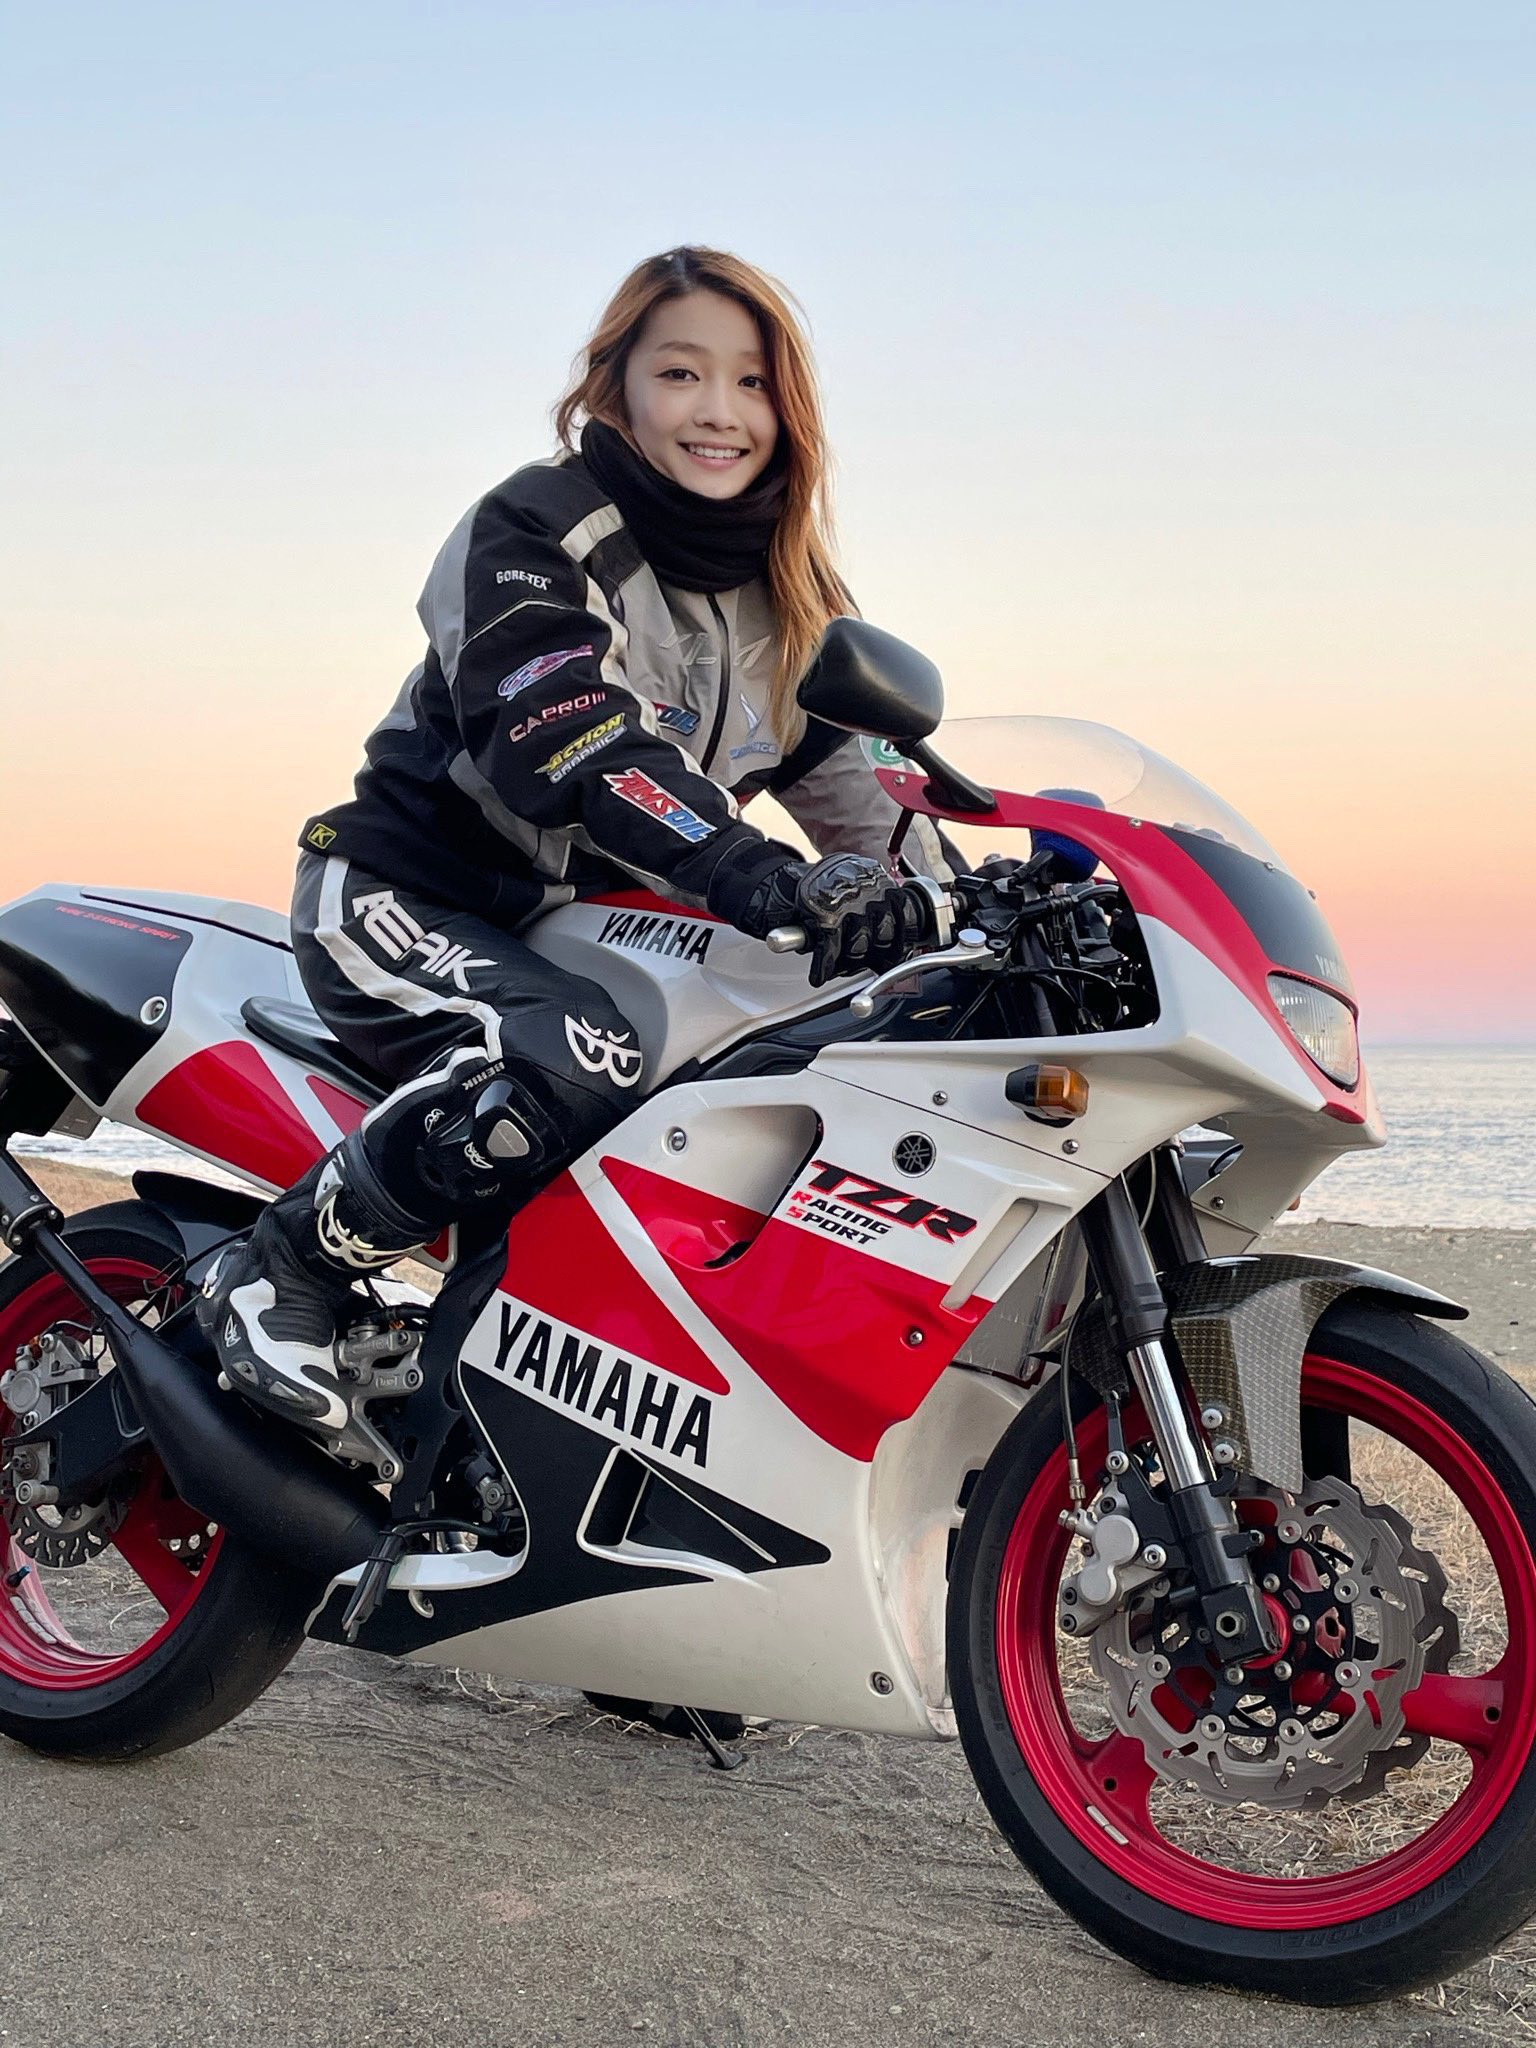 Sốc trước giới tính và tuổi thật của hot girl biker người Nhật - 1